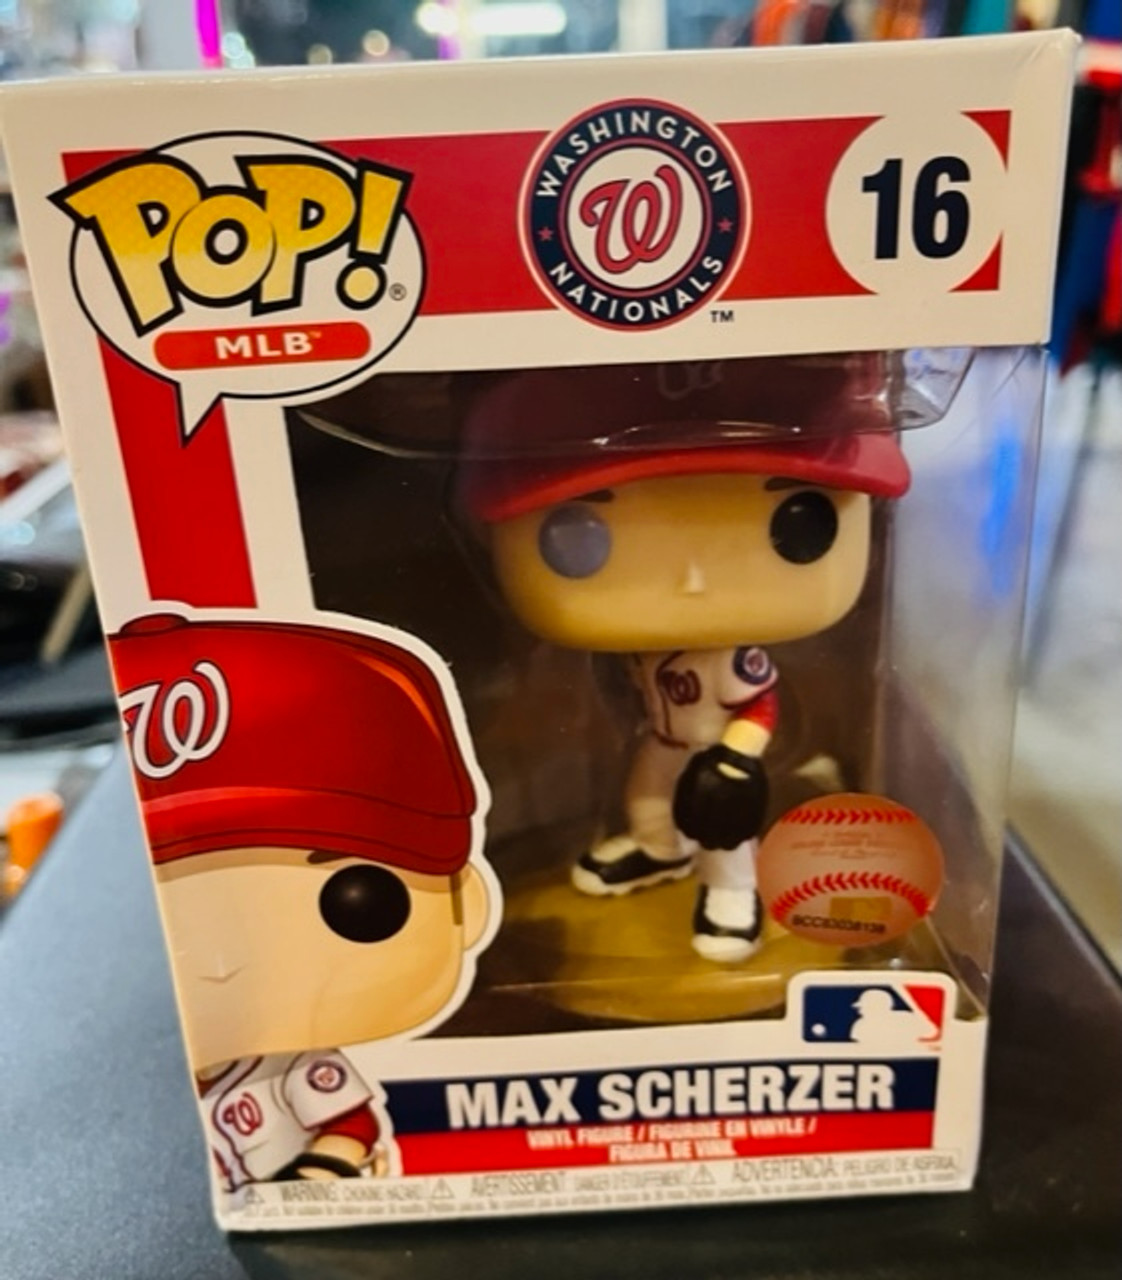 Max Scherzer Jerseys & Gear in MLB Fan Shop 